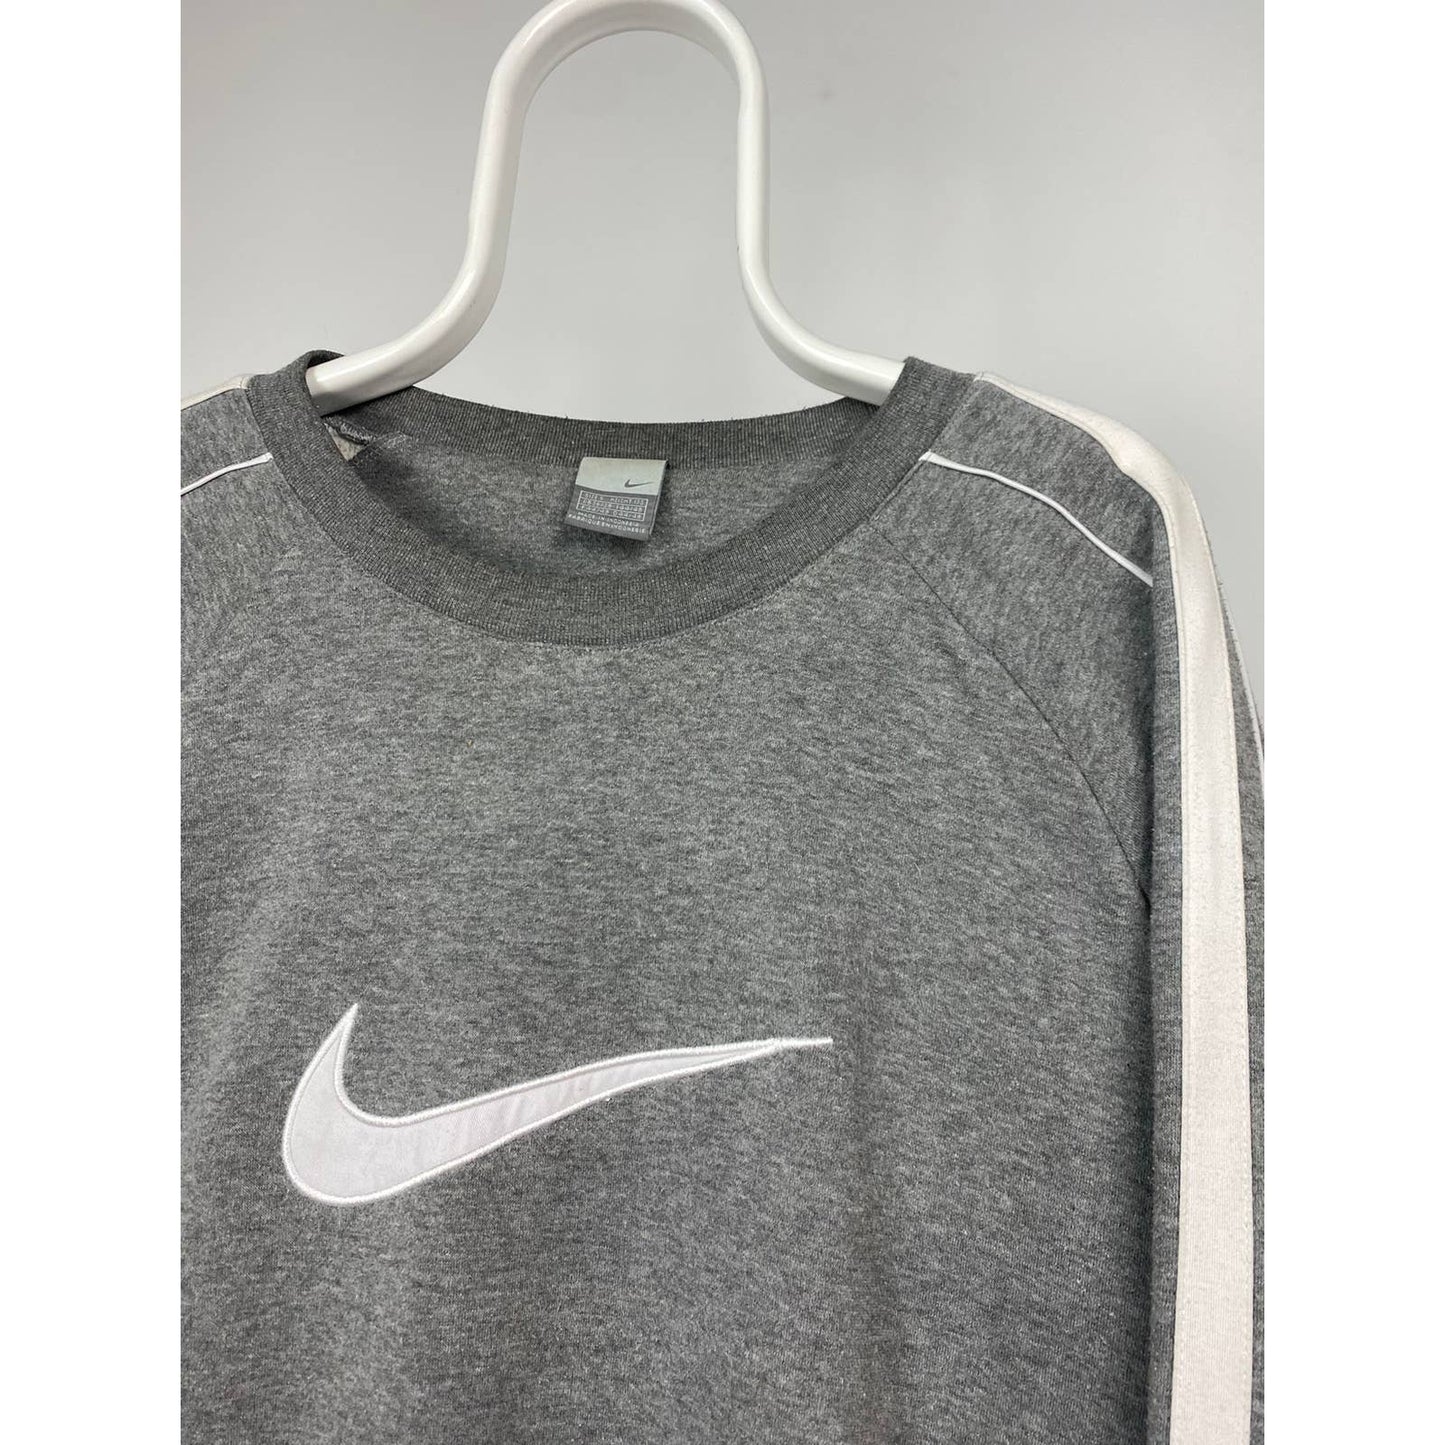 Nike vintage grey sweatshirt big swoosh 2000s